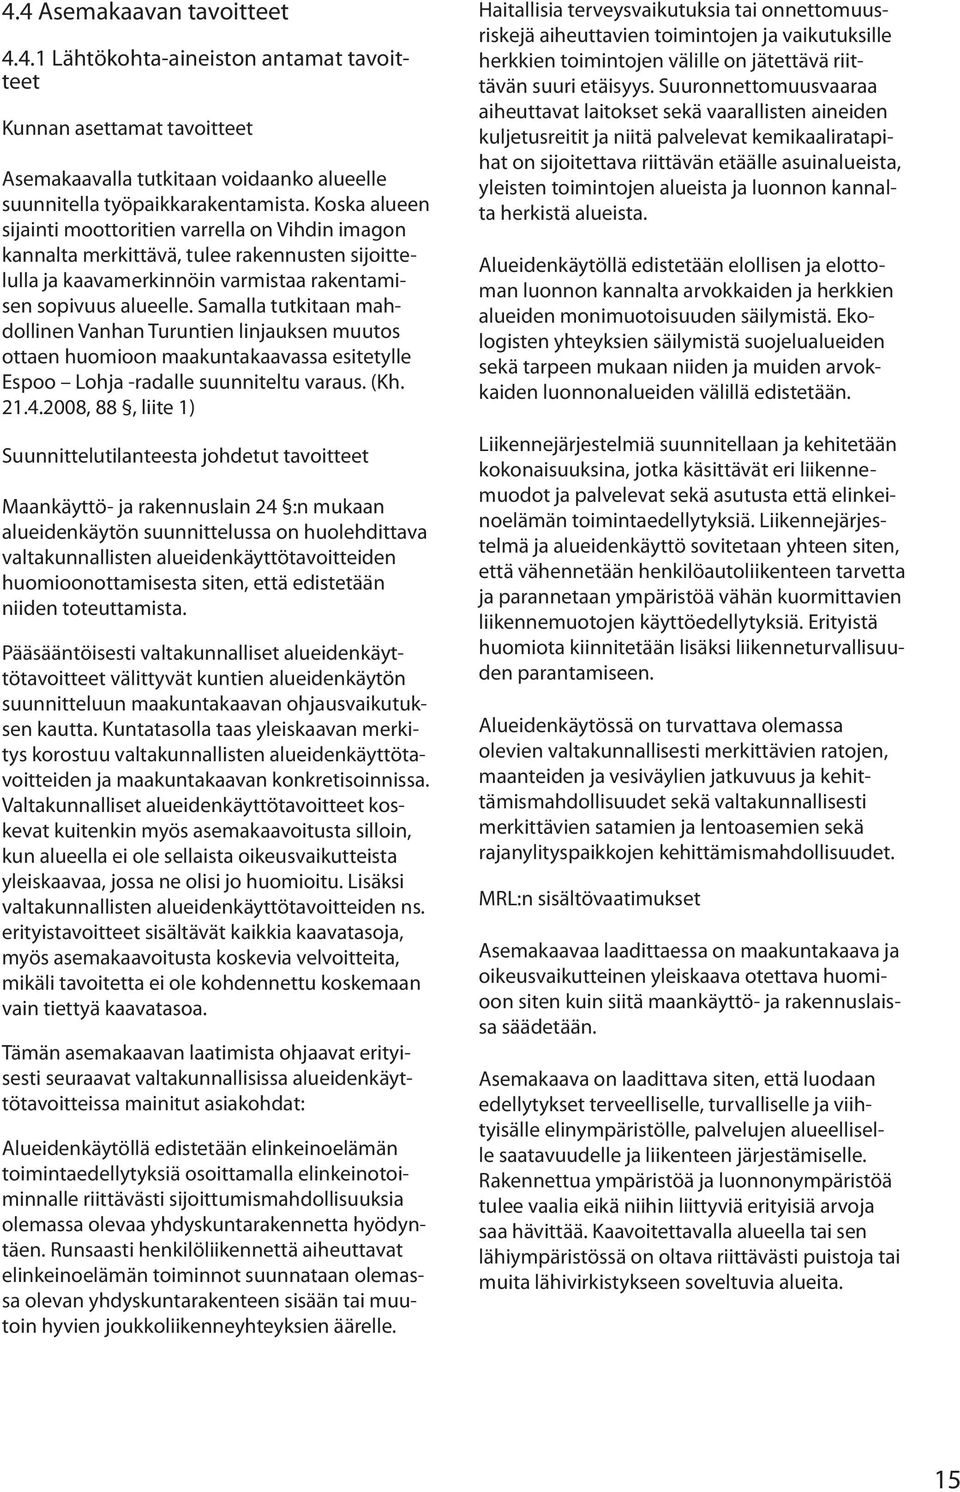 Samalla tutkitaan mahdollinen Vanhan Turuntien linjauksen muutos ottaen huomioon maakuntakaavassa esitetylle Espoo Lohja -radalle suunniteltu varaus. (Kh. 21.4.